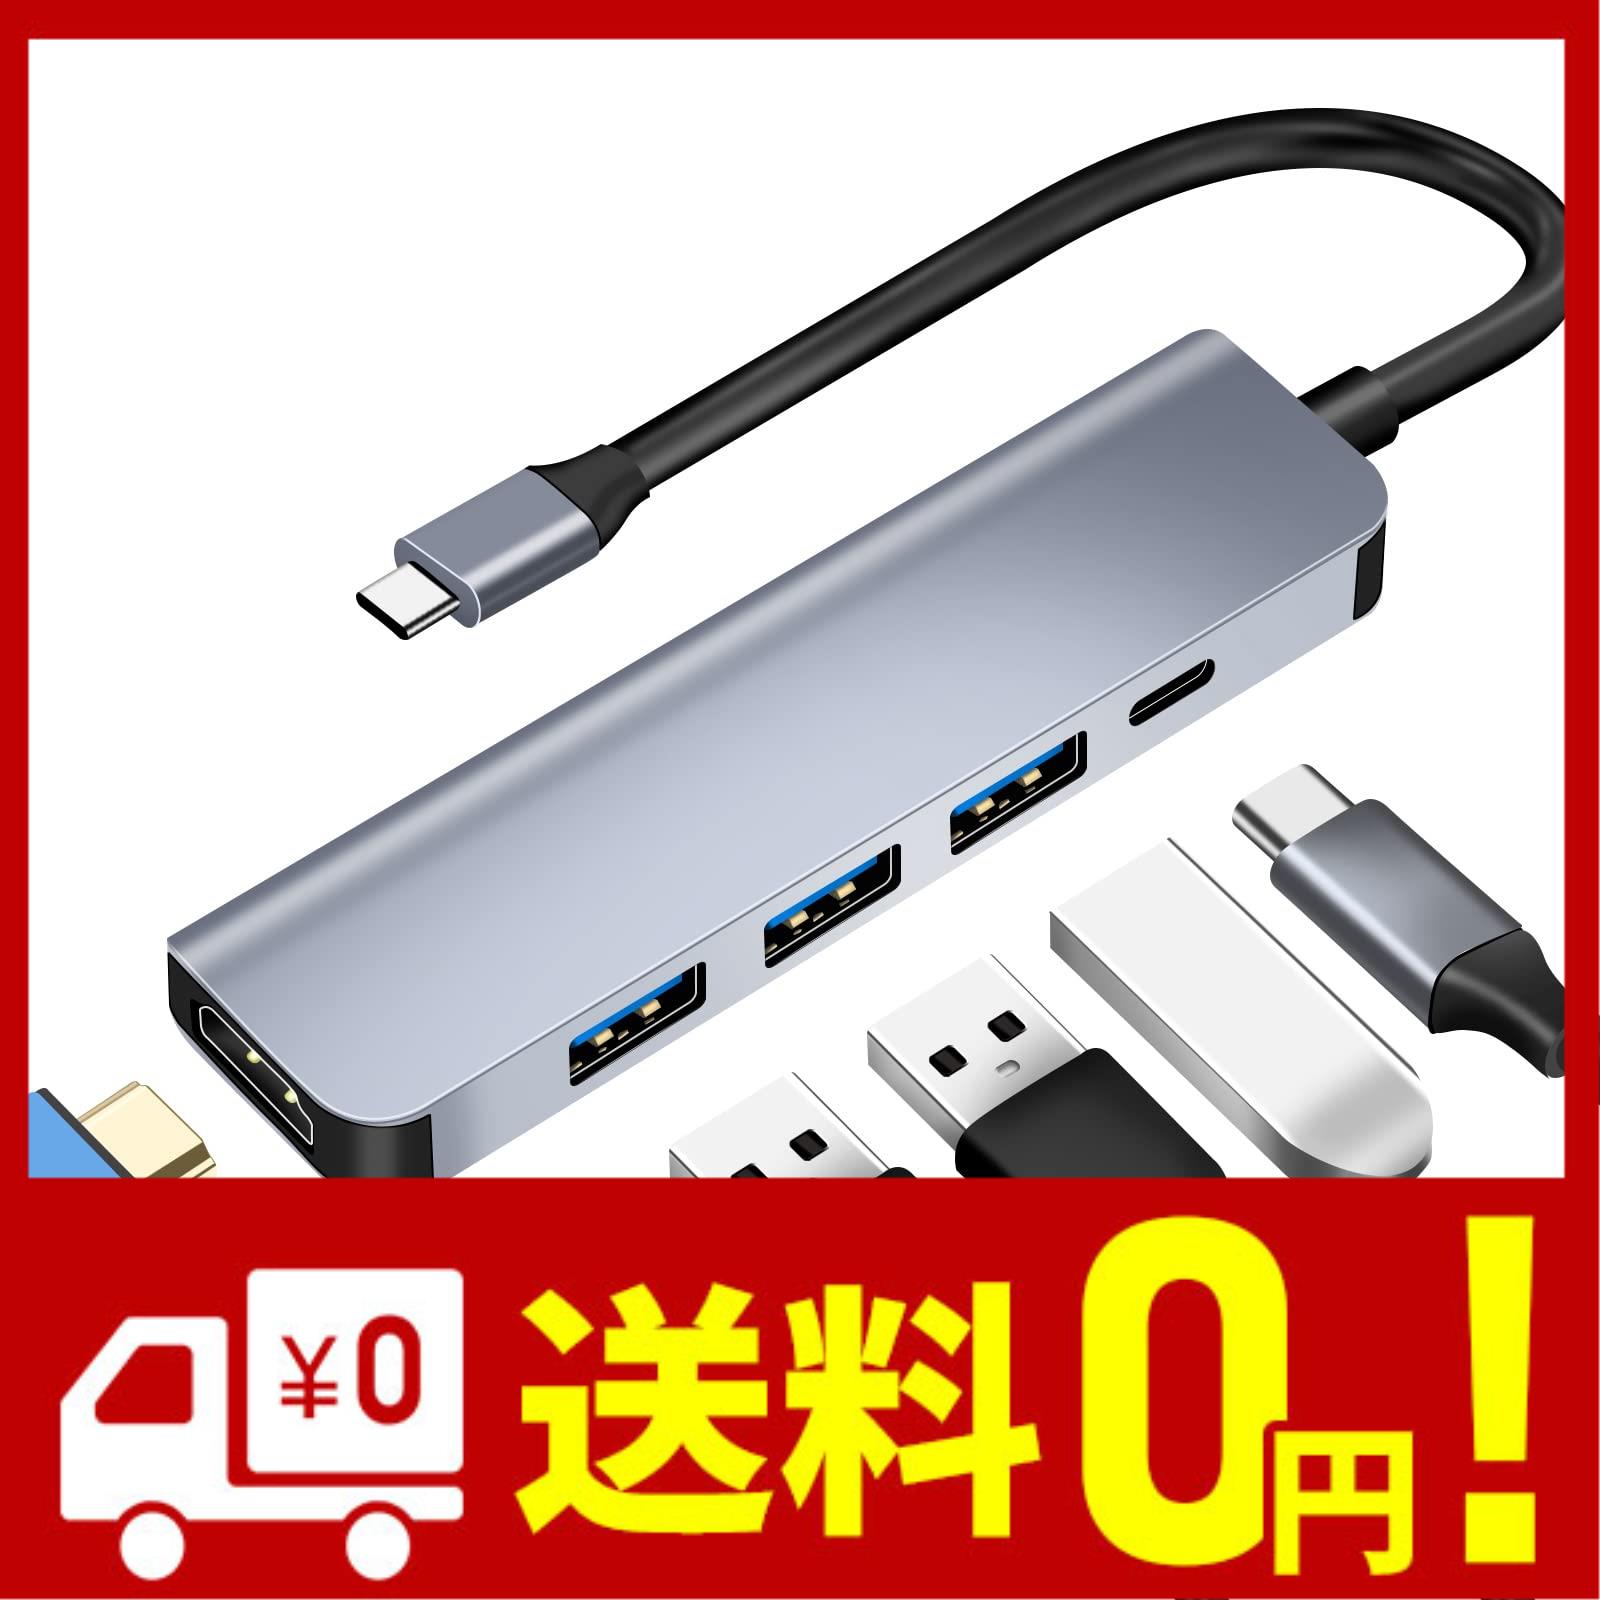 usb ハブ 5-in-1USB Type c アダプタ 4K対応HDMI出力ポート usb c ハブ マルチポート 4KHDMIポート USB 3.0 2.0ポート 2急速データ転送 U